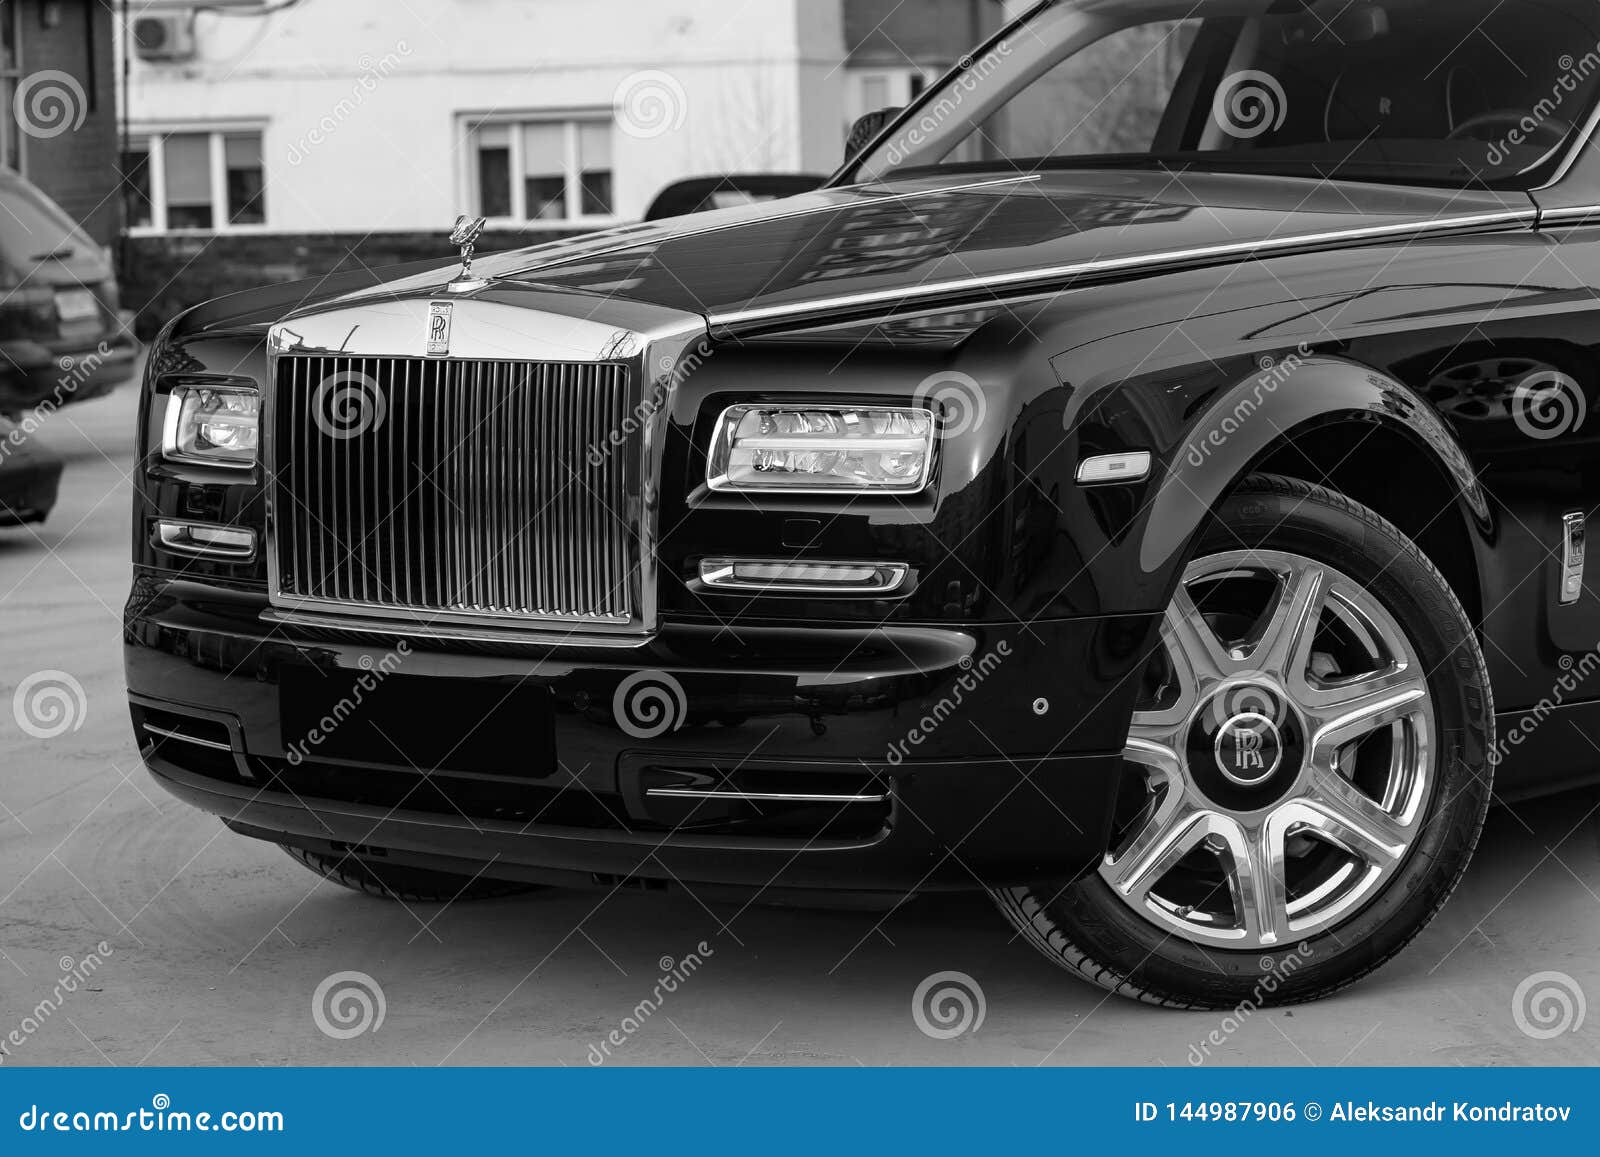 E 11 2019: Het vooraanzicht van nieuw een zeer dure luxe rolt Royce Phantom-auto, een lange zwarte die limousine, model in openlucht, op verkoop in zwart-witte kleur wordt voorbereid